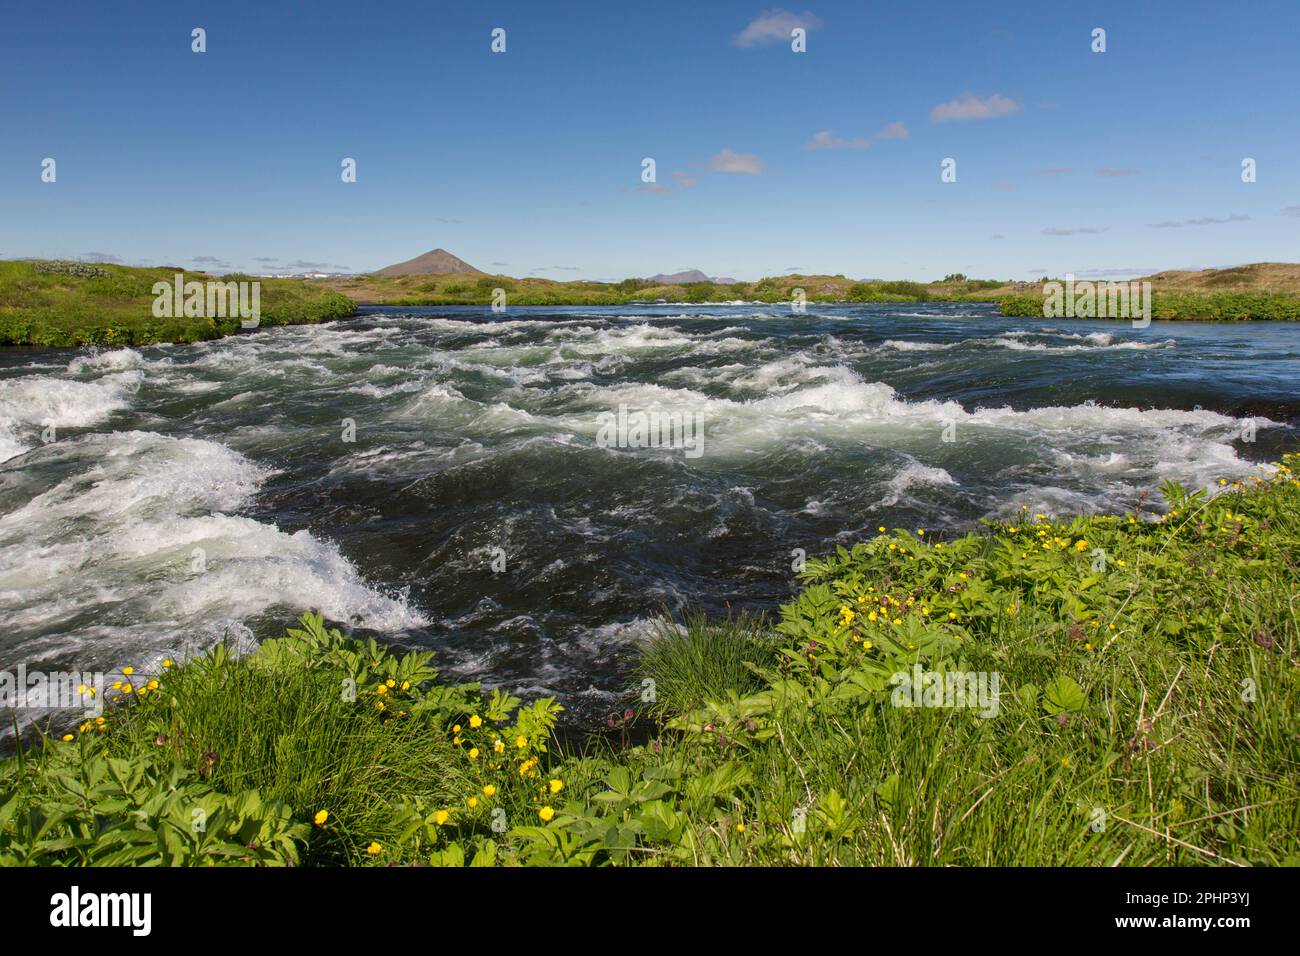 L'effluente fiume Laxá in estate, uno dei migliori fiumi di trote brune del mondo, che sfocia dal lago Mývatn nel nord dell'Islanda Foto Stock